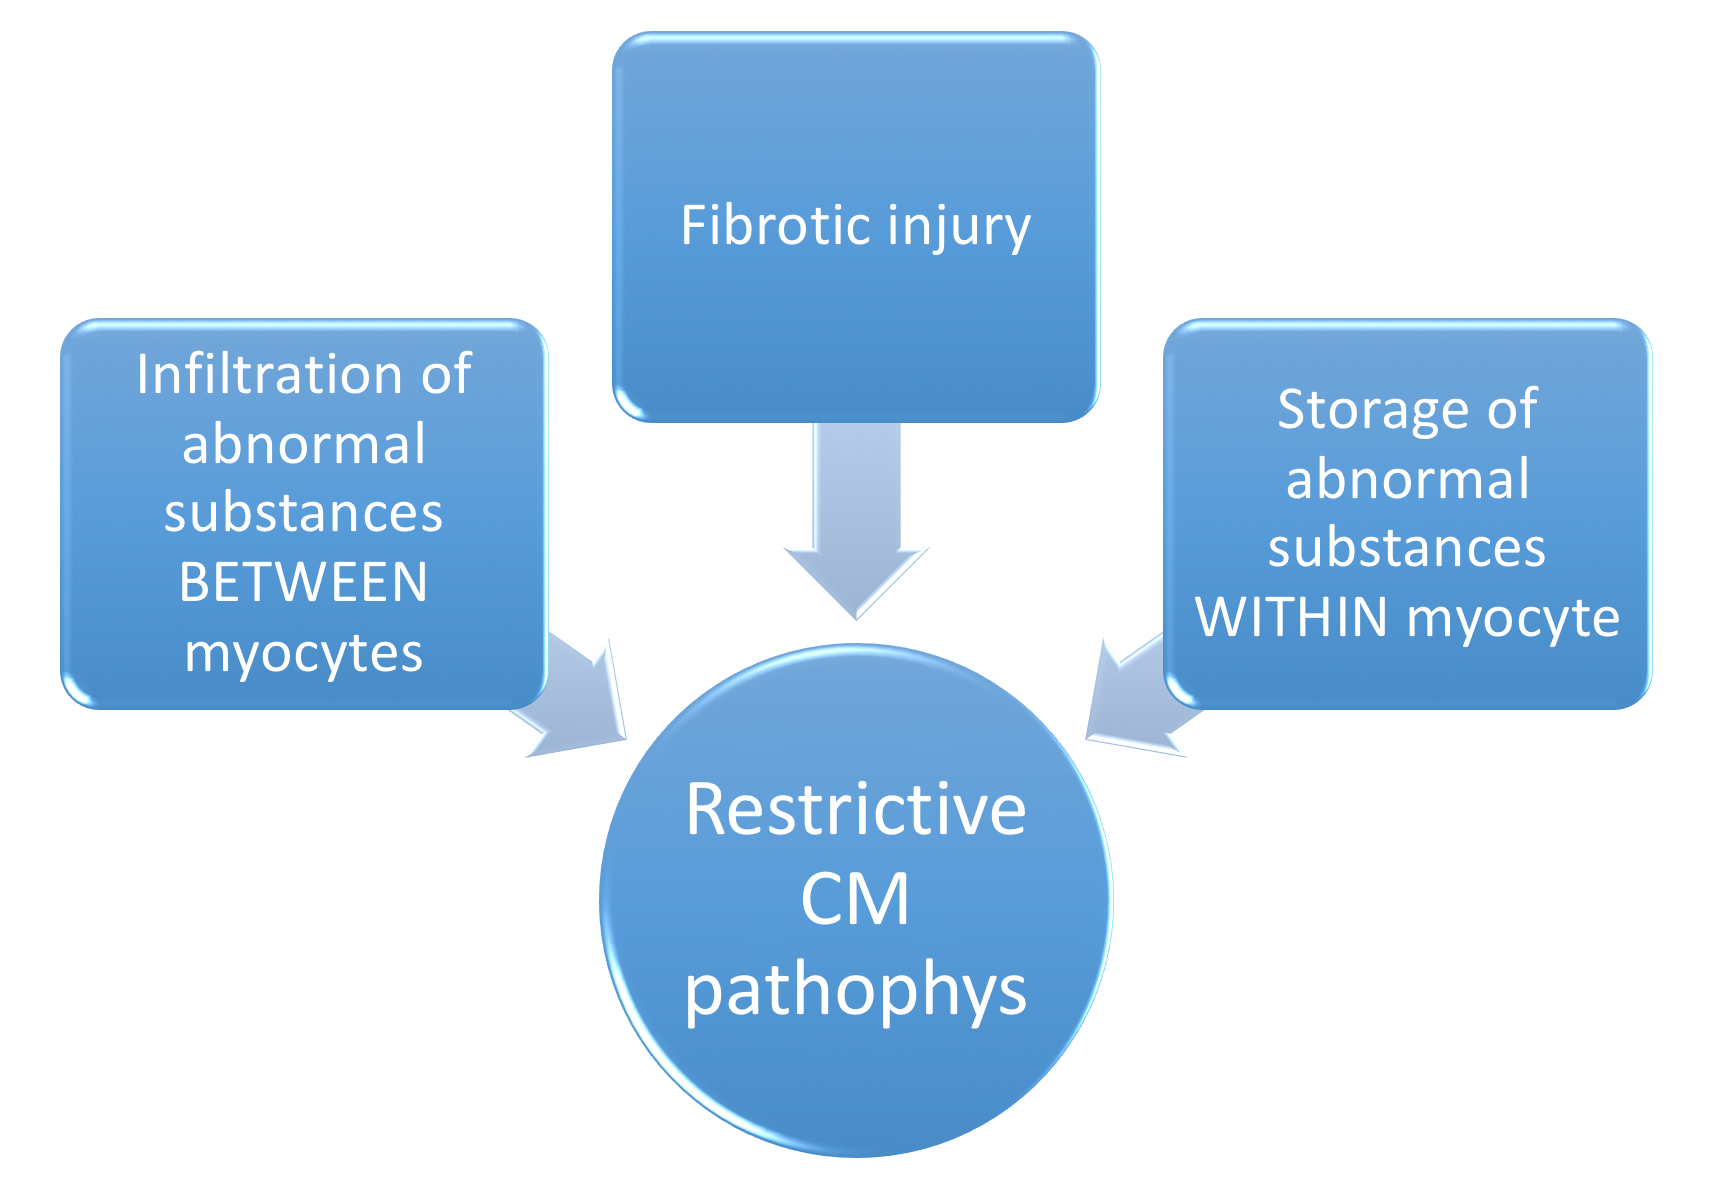 File:3 main pathophys to Restrictive CM.png